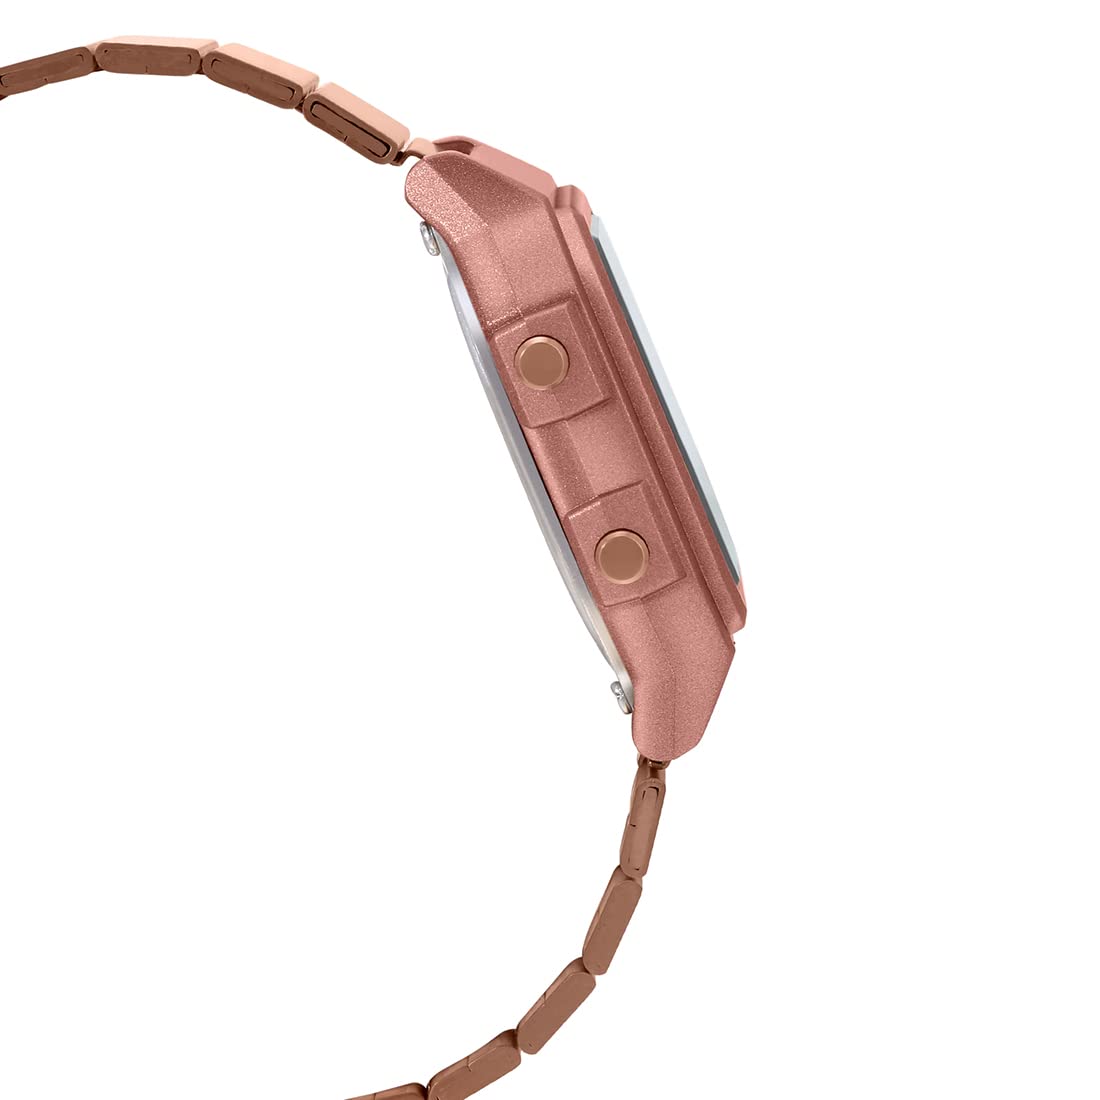 Casio Unisex Adult Digital Quartz Watch with Stainless Steel Strap 4549526169342